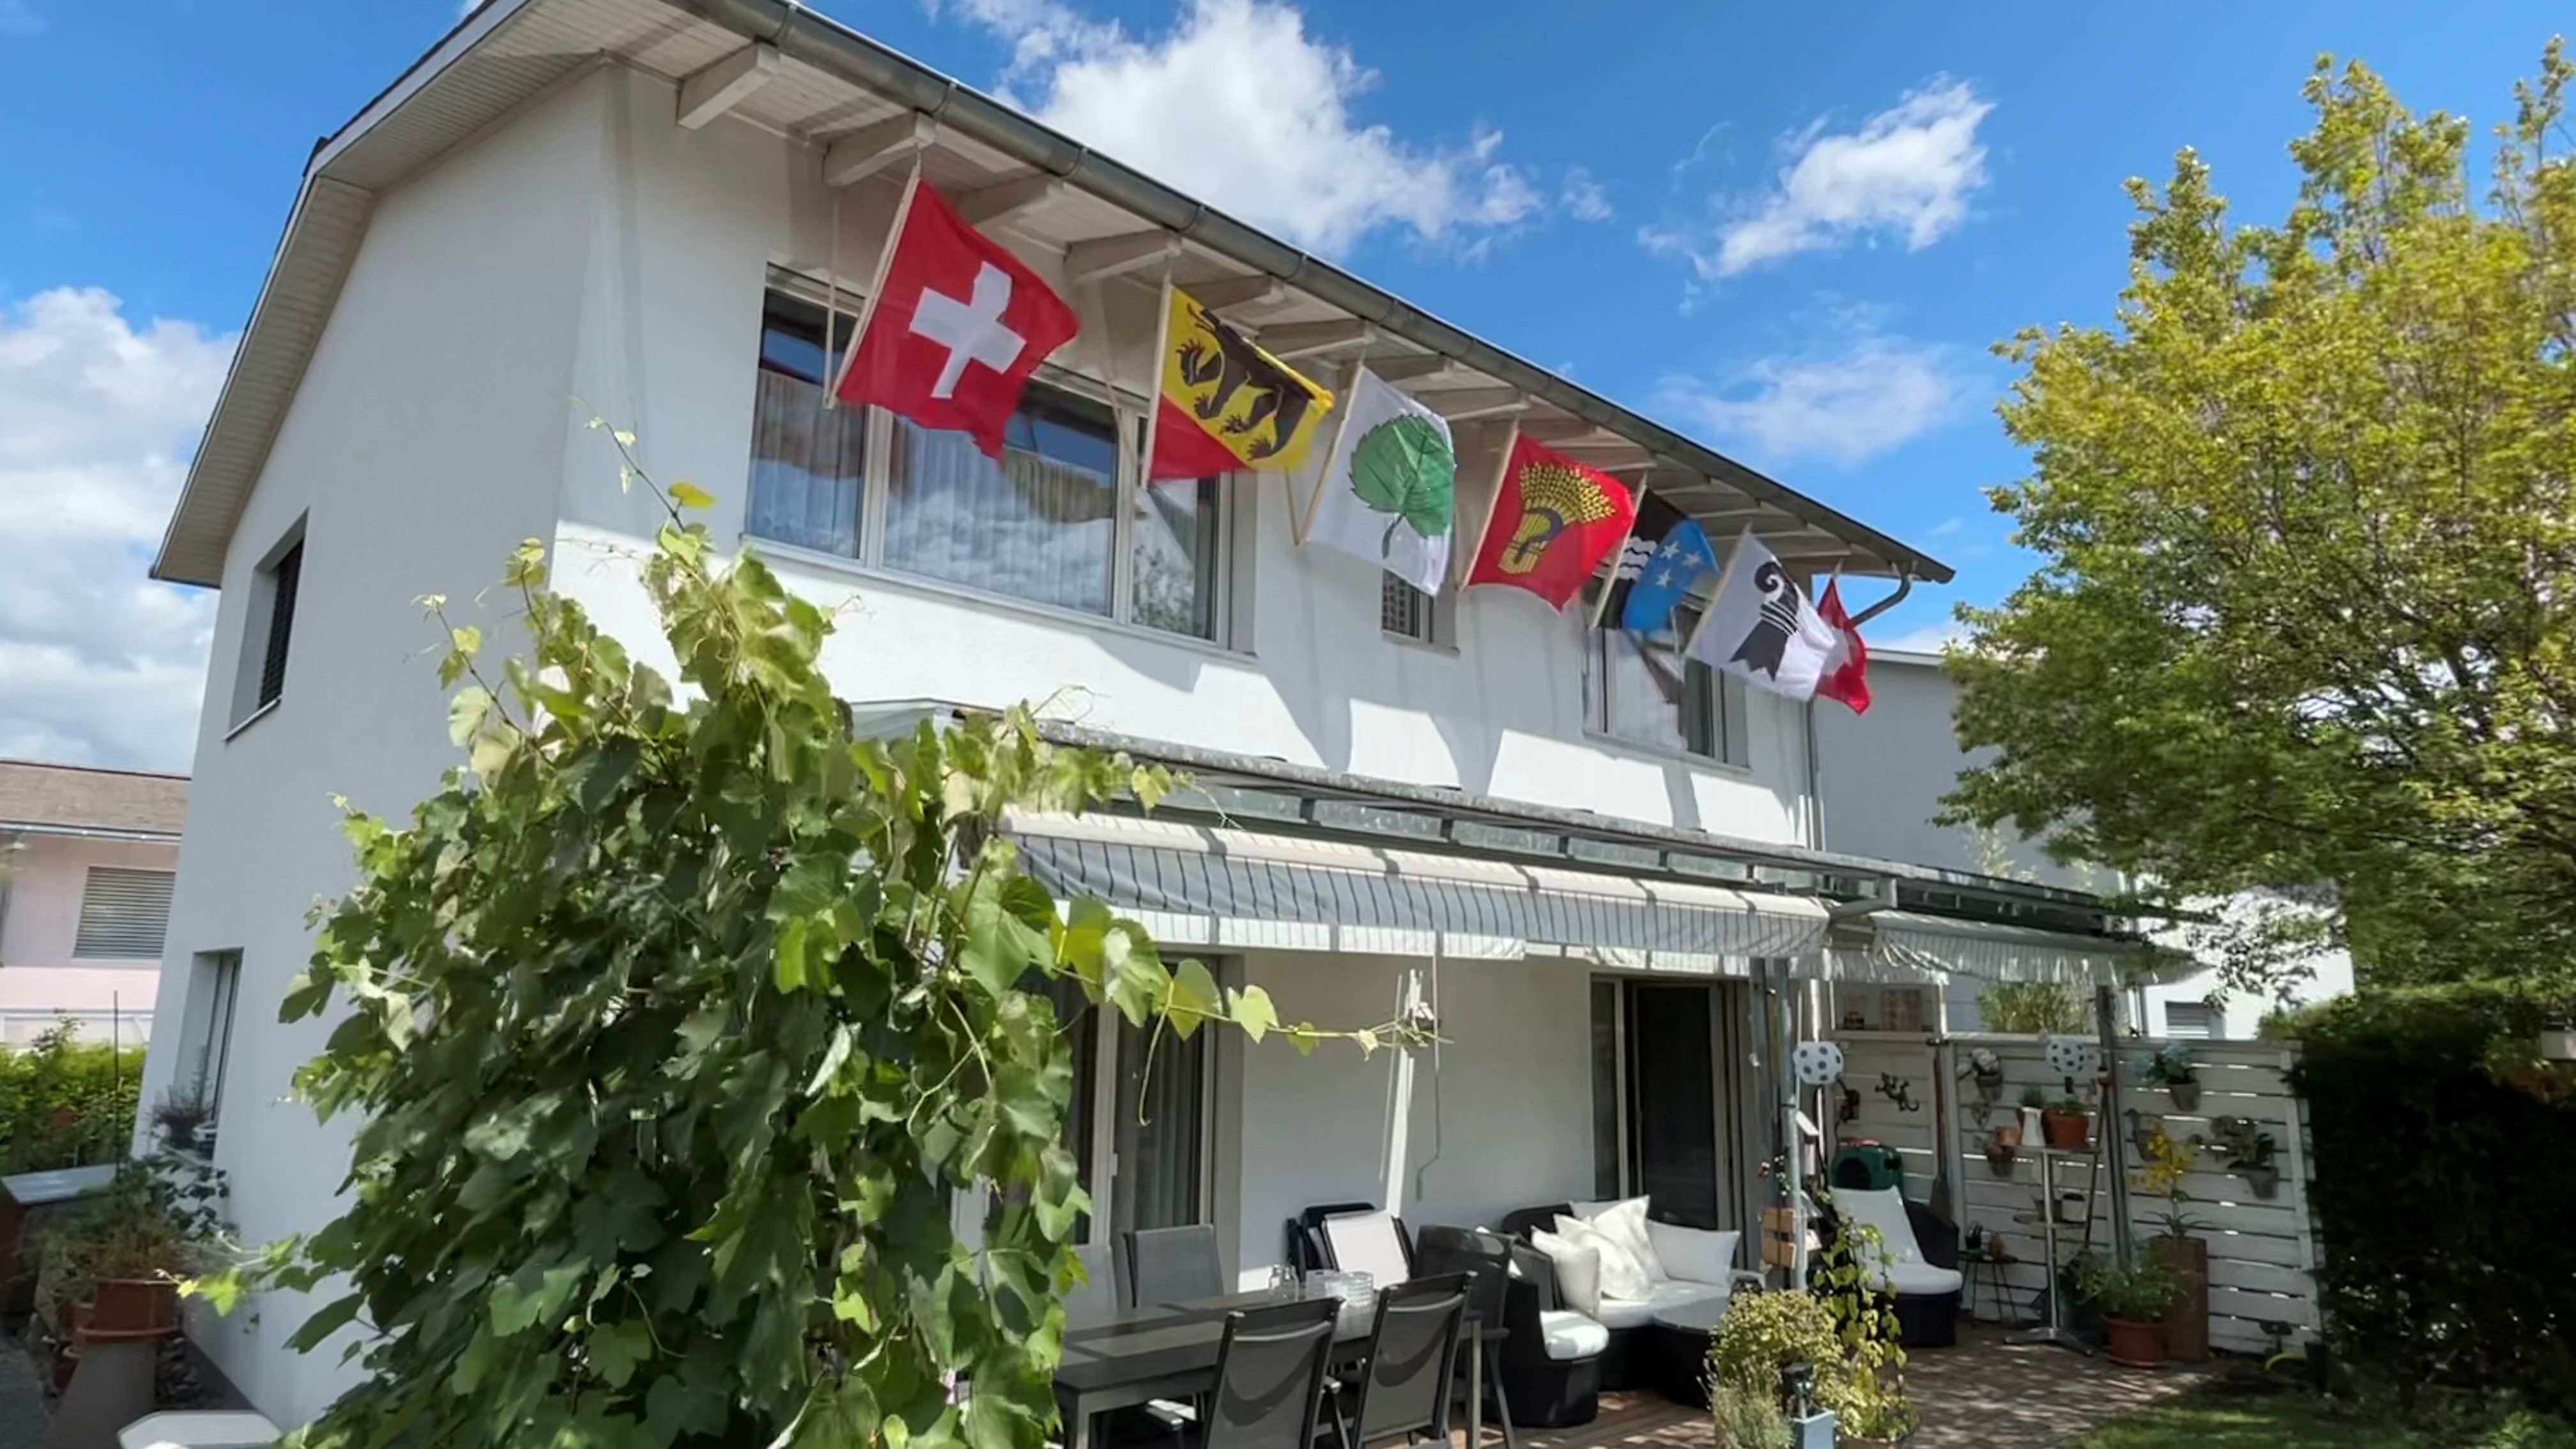 Haus mit verschiedenen heraldischen Fahnen.